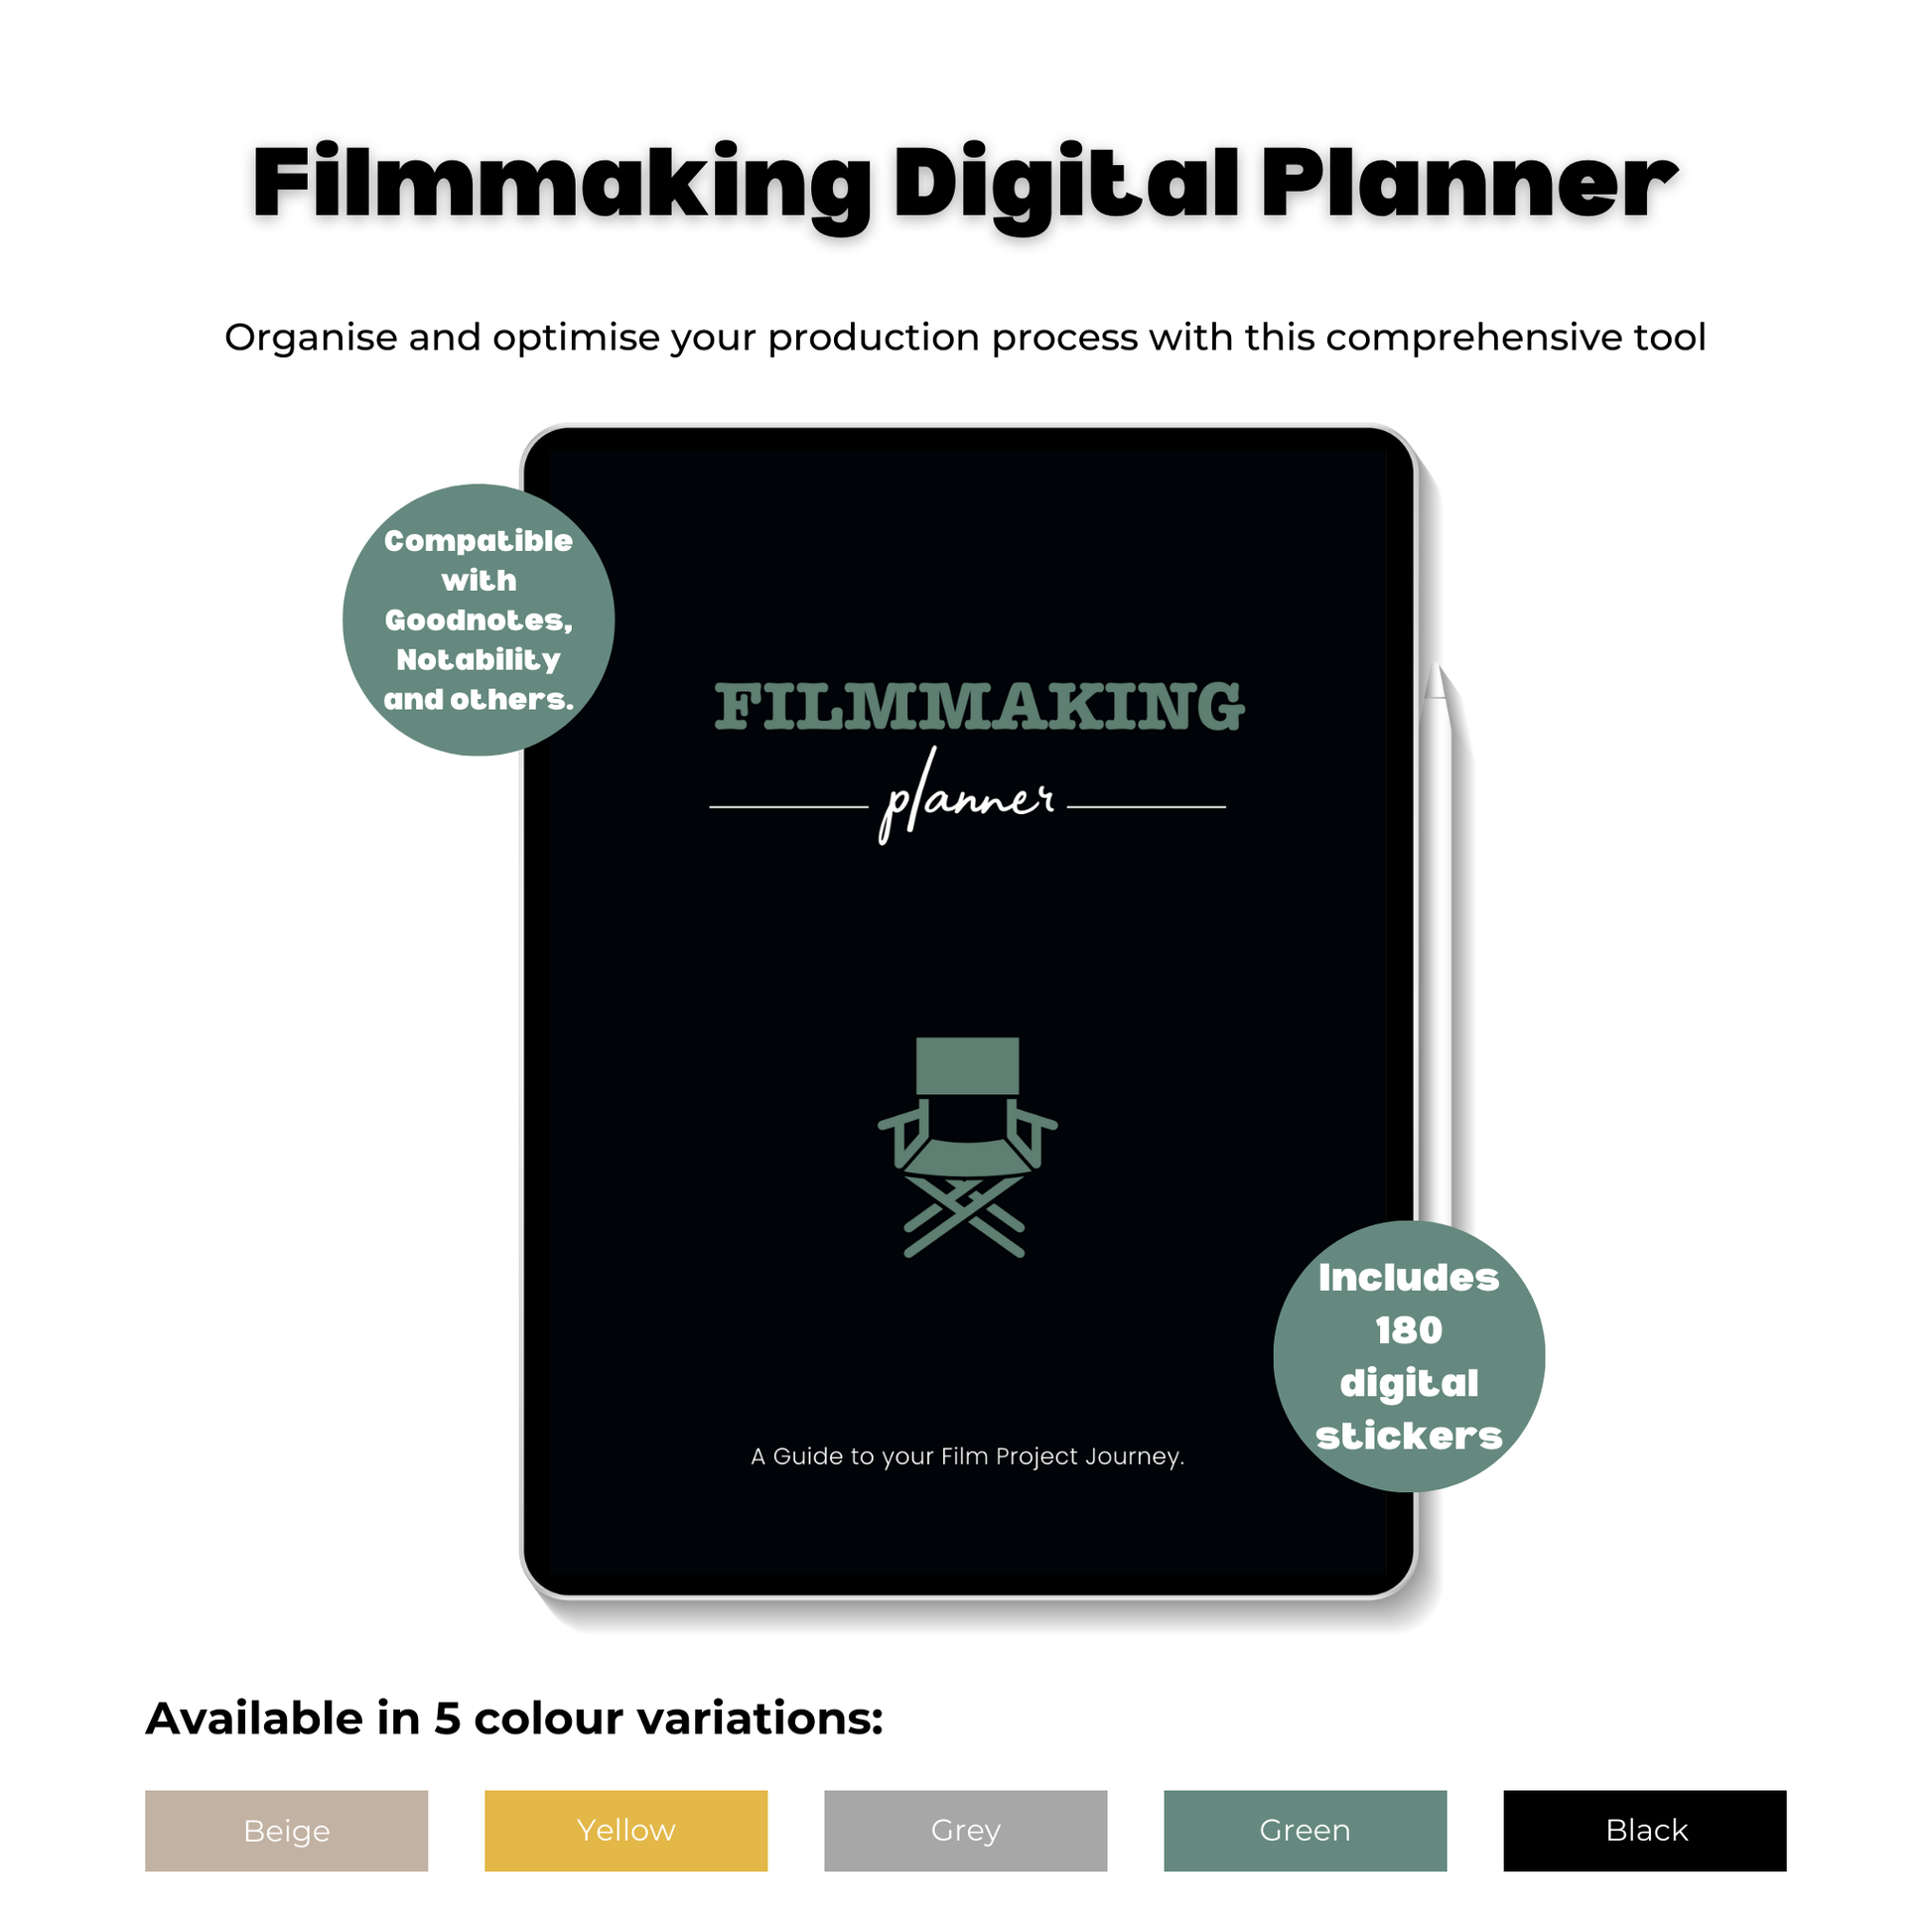 Filmmaking Digital Planner image showing green planner variation.